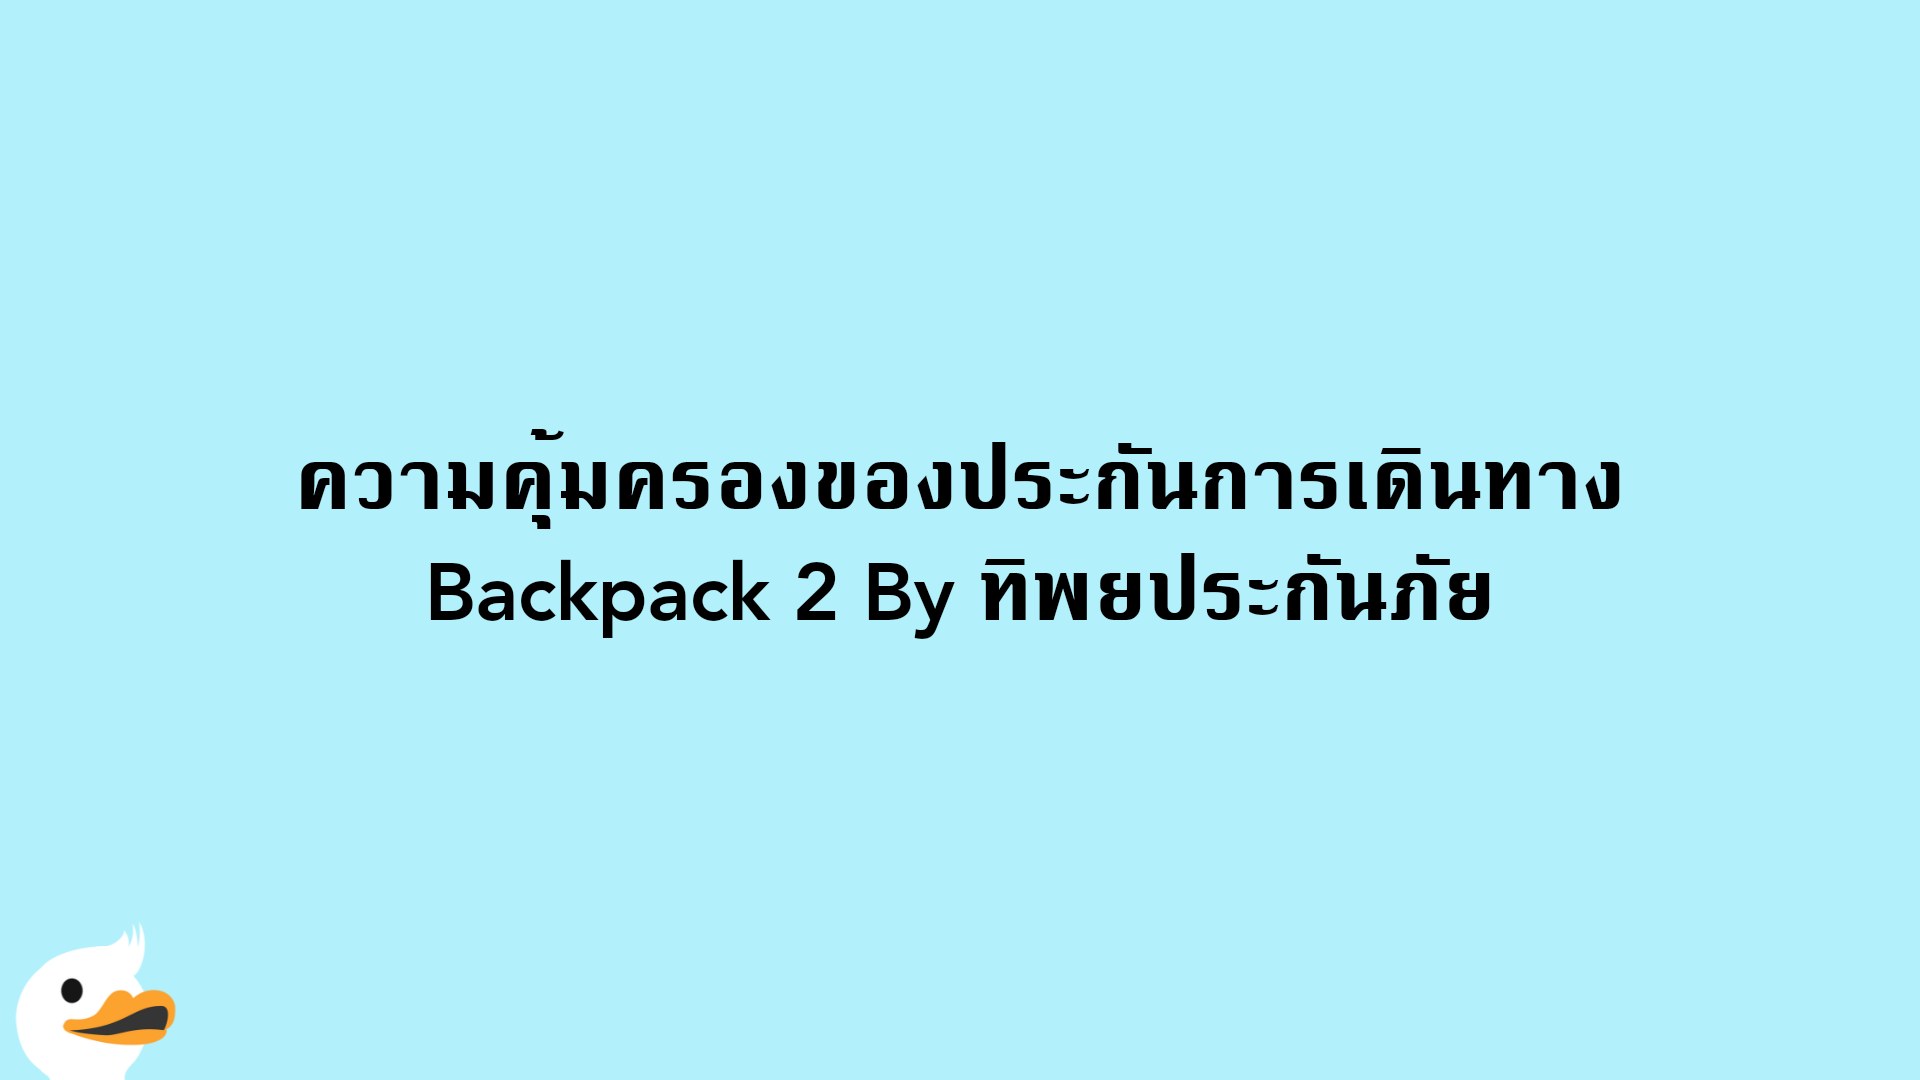 ความคุ้มครองของประกันการเดินทาง Backpack 2 By ทิพยประกันภัย